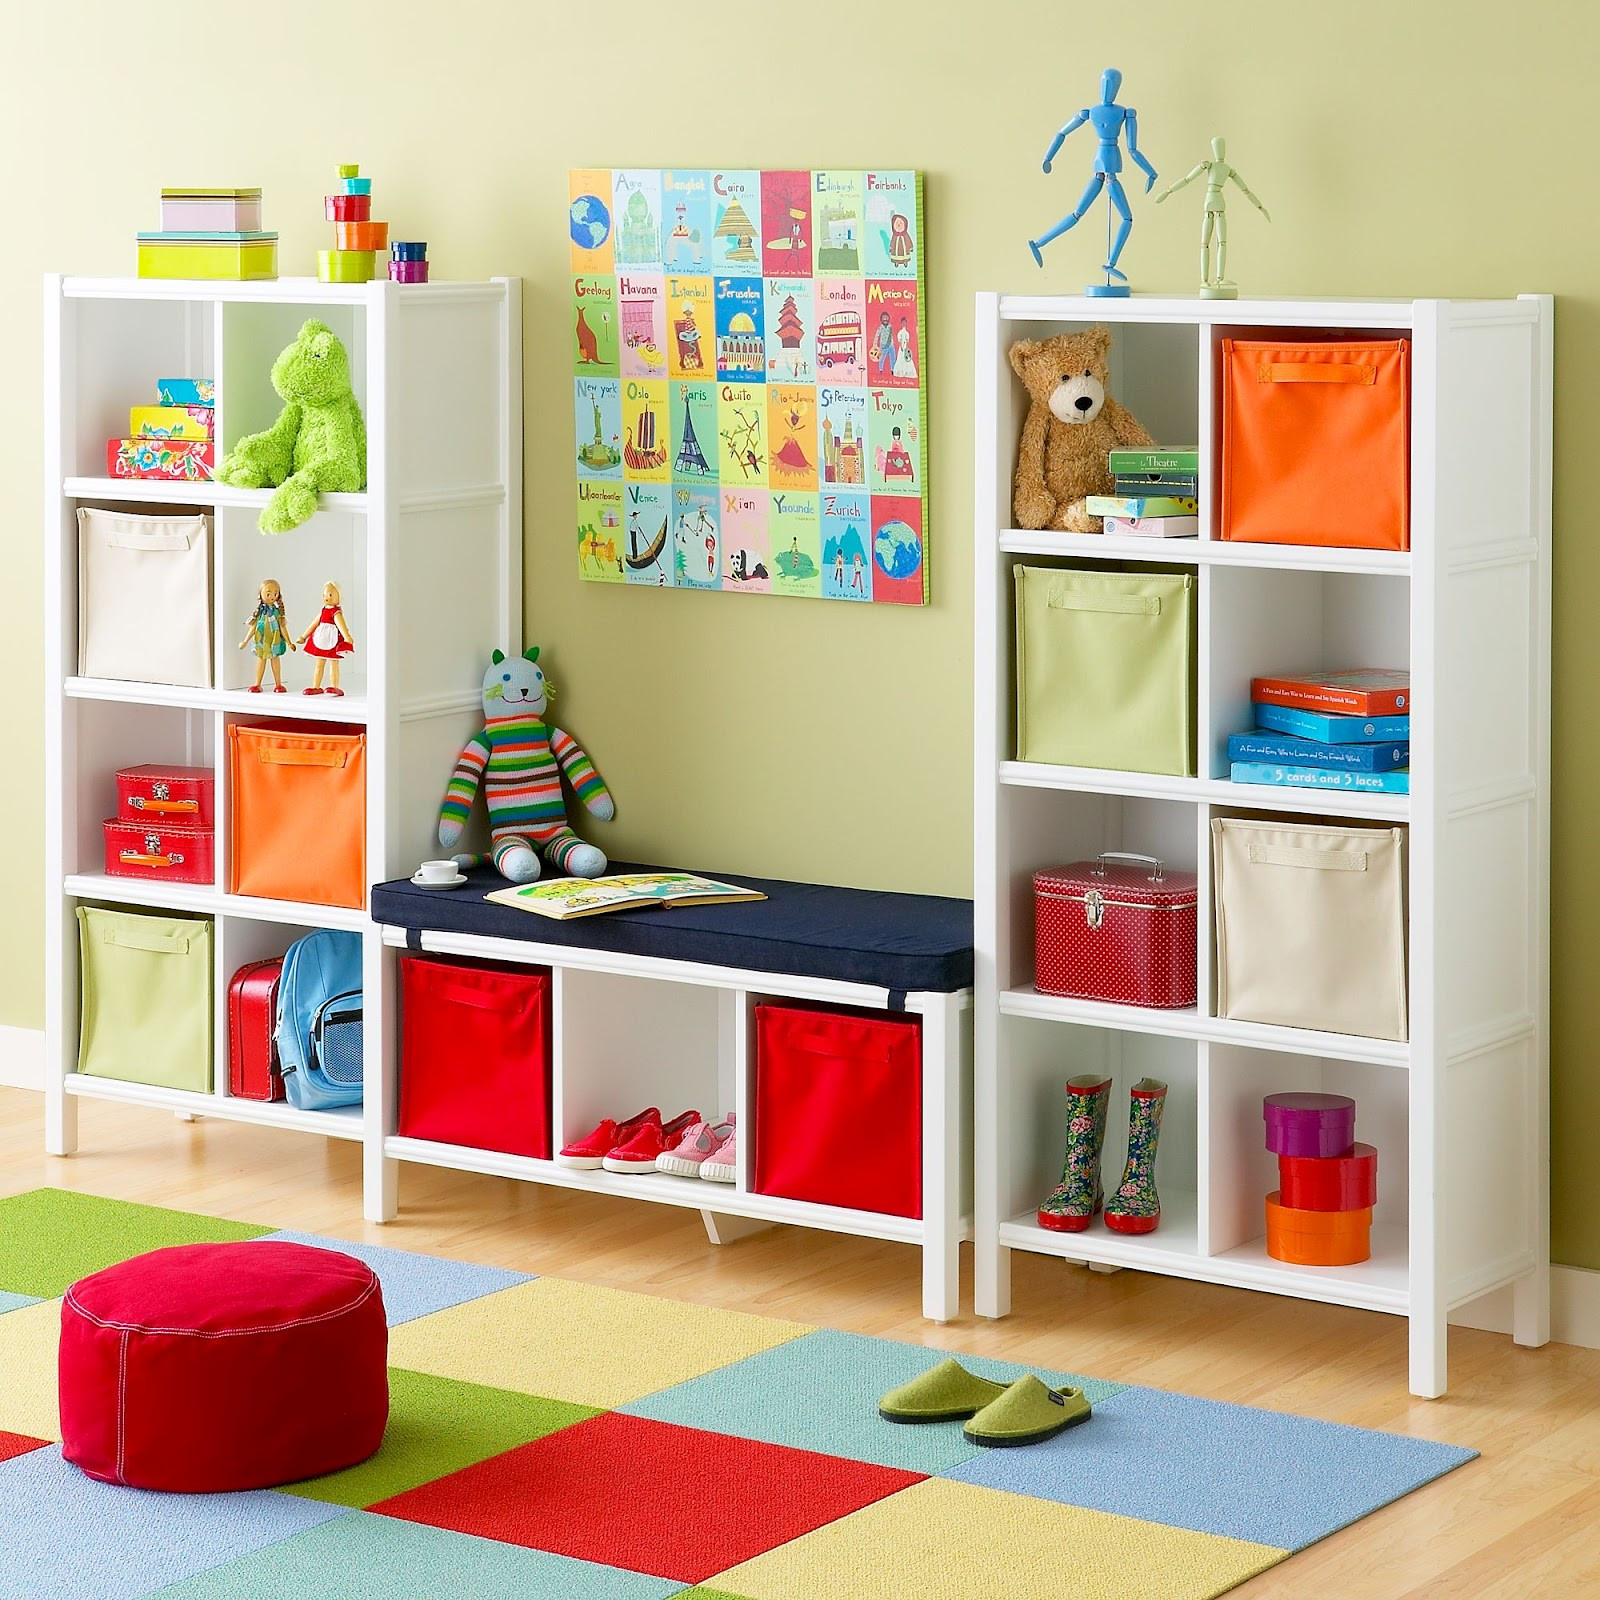 Kids Playroom Furniture
 Kids Playroom Designs & Ideas